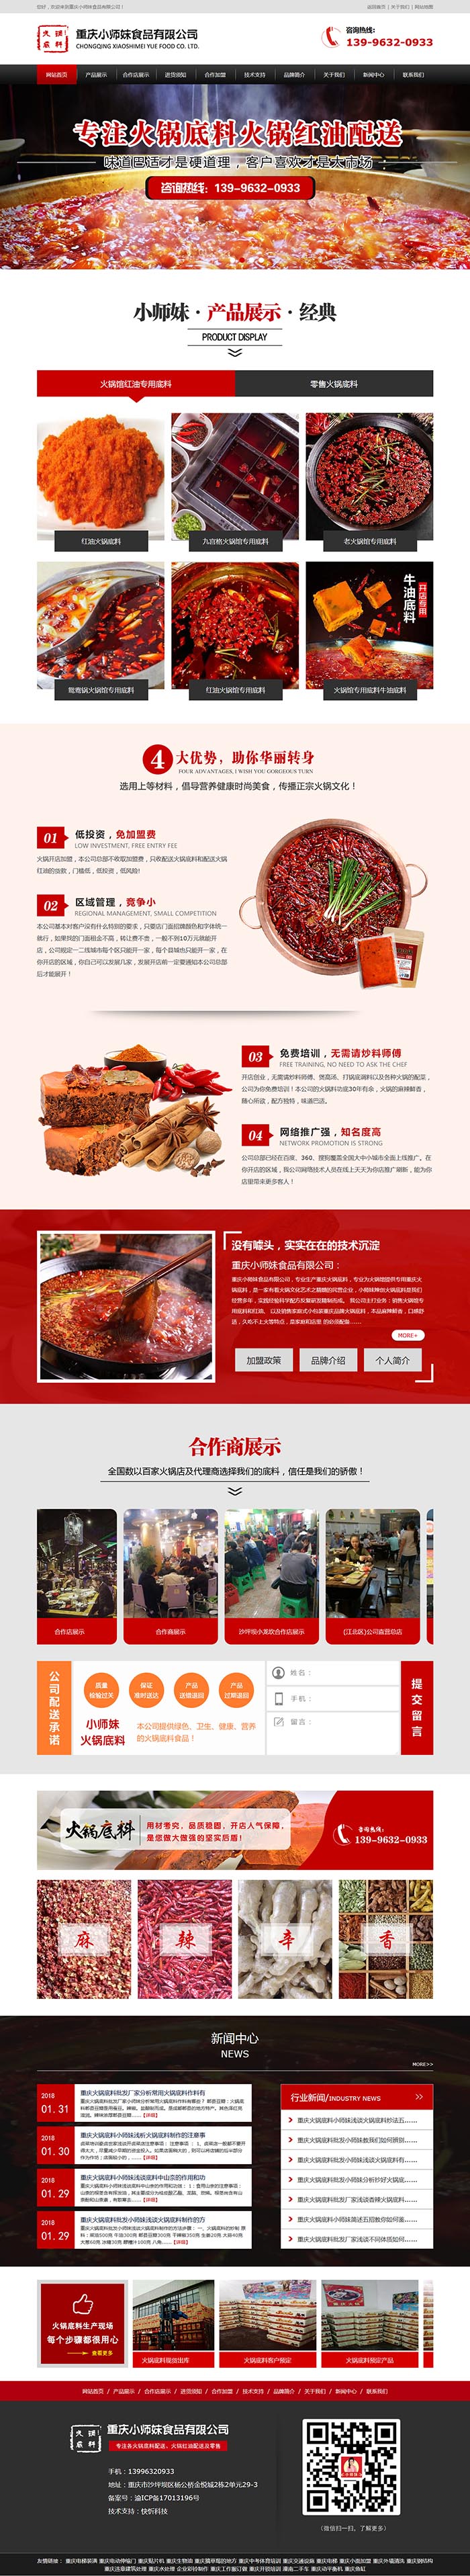 重庆小师妹食品有限公司网站建设案例